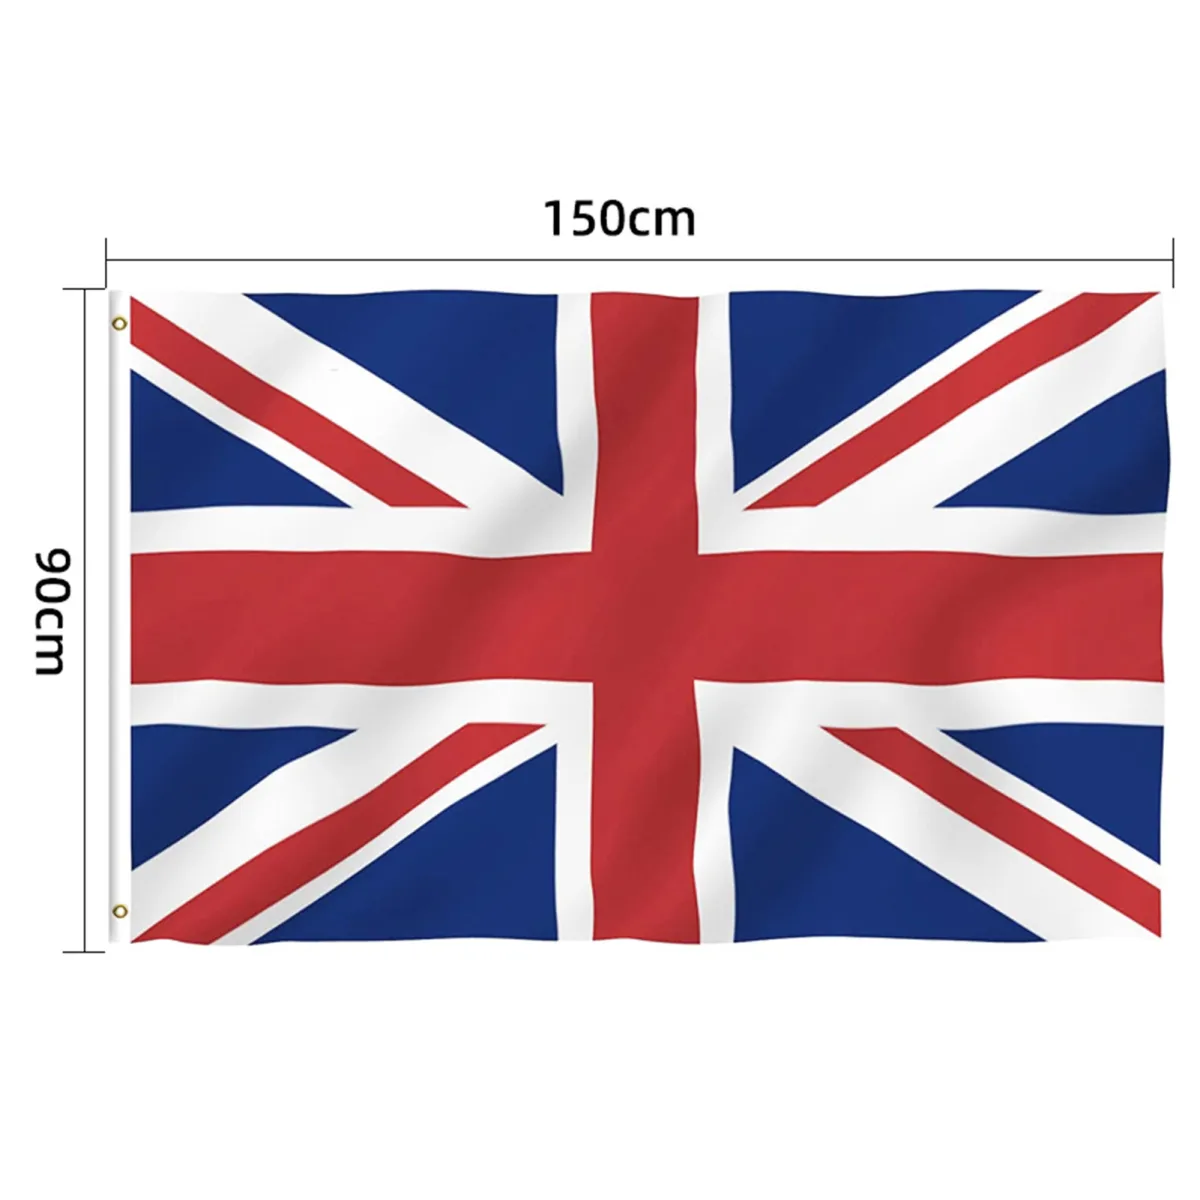 Cờ Quốc Gia Anh: Cờ quốc gia Anh luôn là biểu tượng của sự kiêu hãnh và quyền lực. Với thiết kế đặc biệt, chiếc cờ này luôn được người Anh và toàn thế giới coi là một biểu tượng vĩnh cửu. Hãy ngắm nhìn chiếc cờ này và cảm nhận sức mạnh của đất nước Anh.